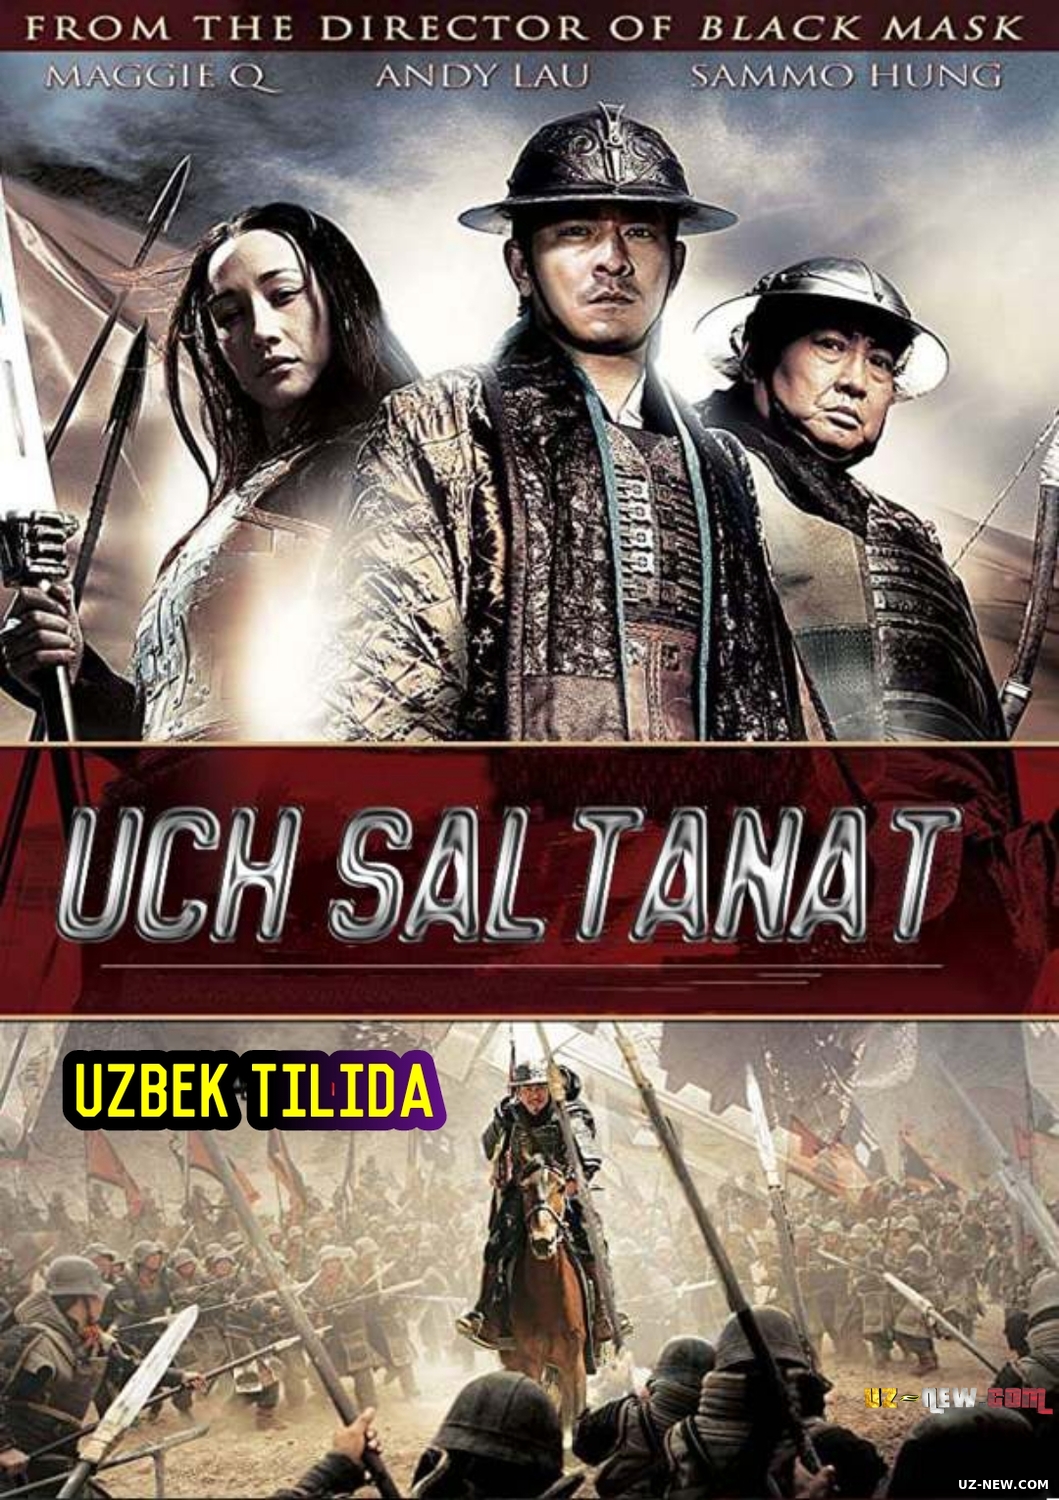 Uch saltanat / 3 qirollik: Ajdarning qaytishi (Xitoy filmi Uzbek tilida)